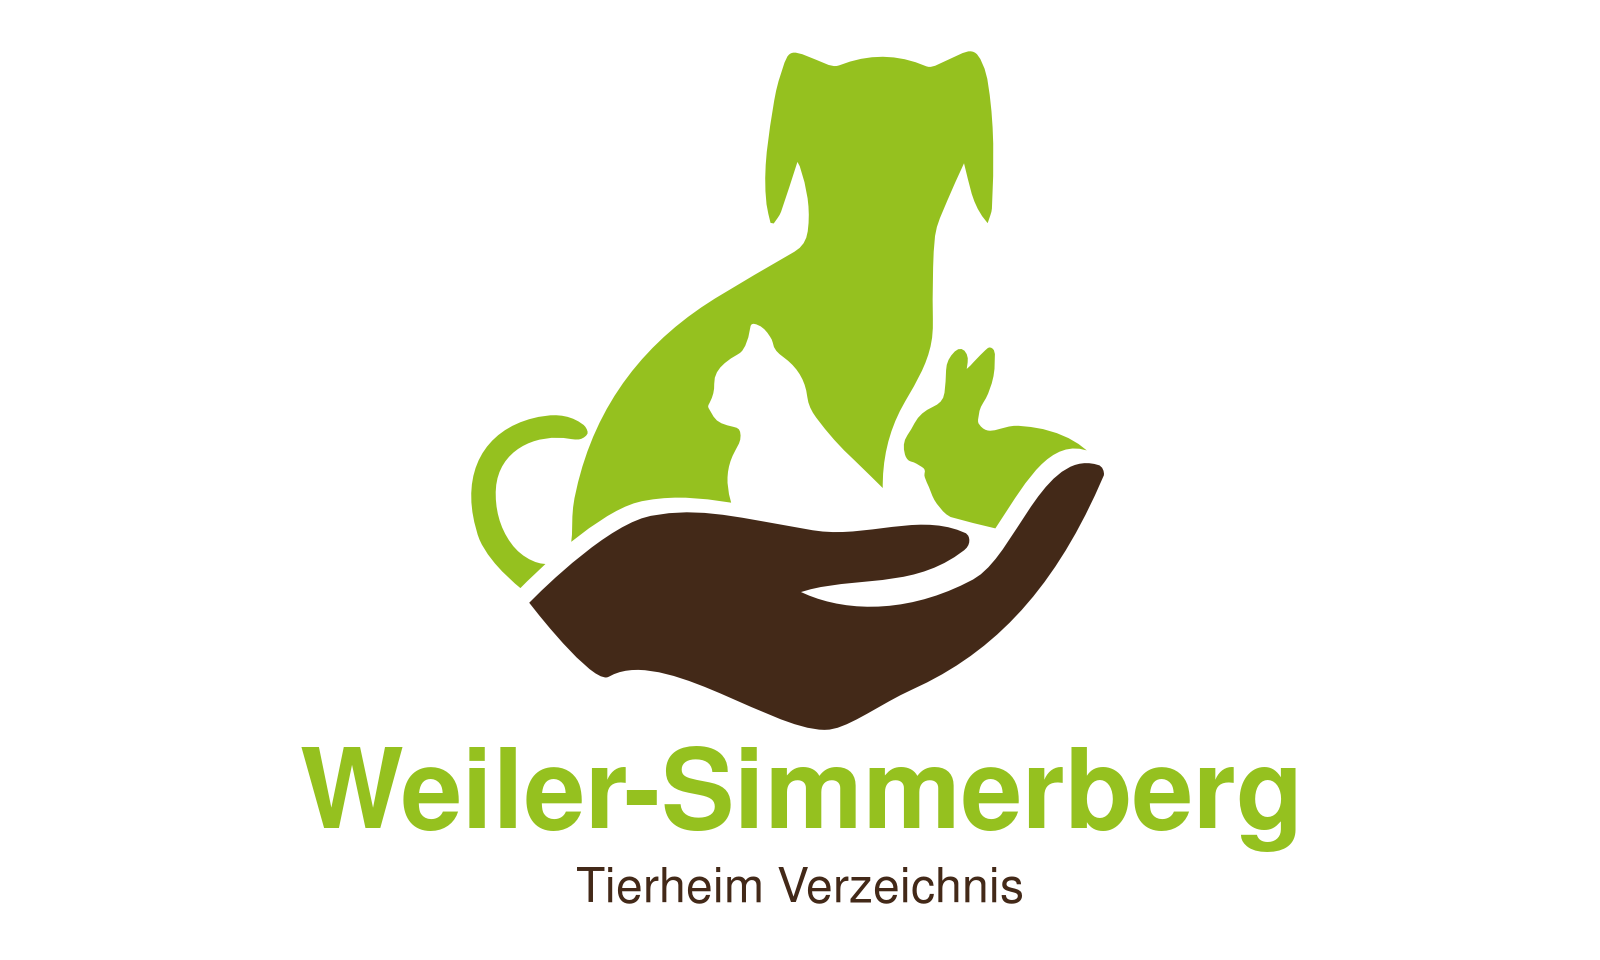 Tierheim Weiler-Simmerberg